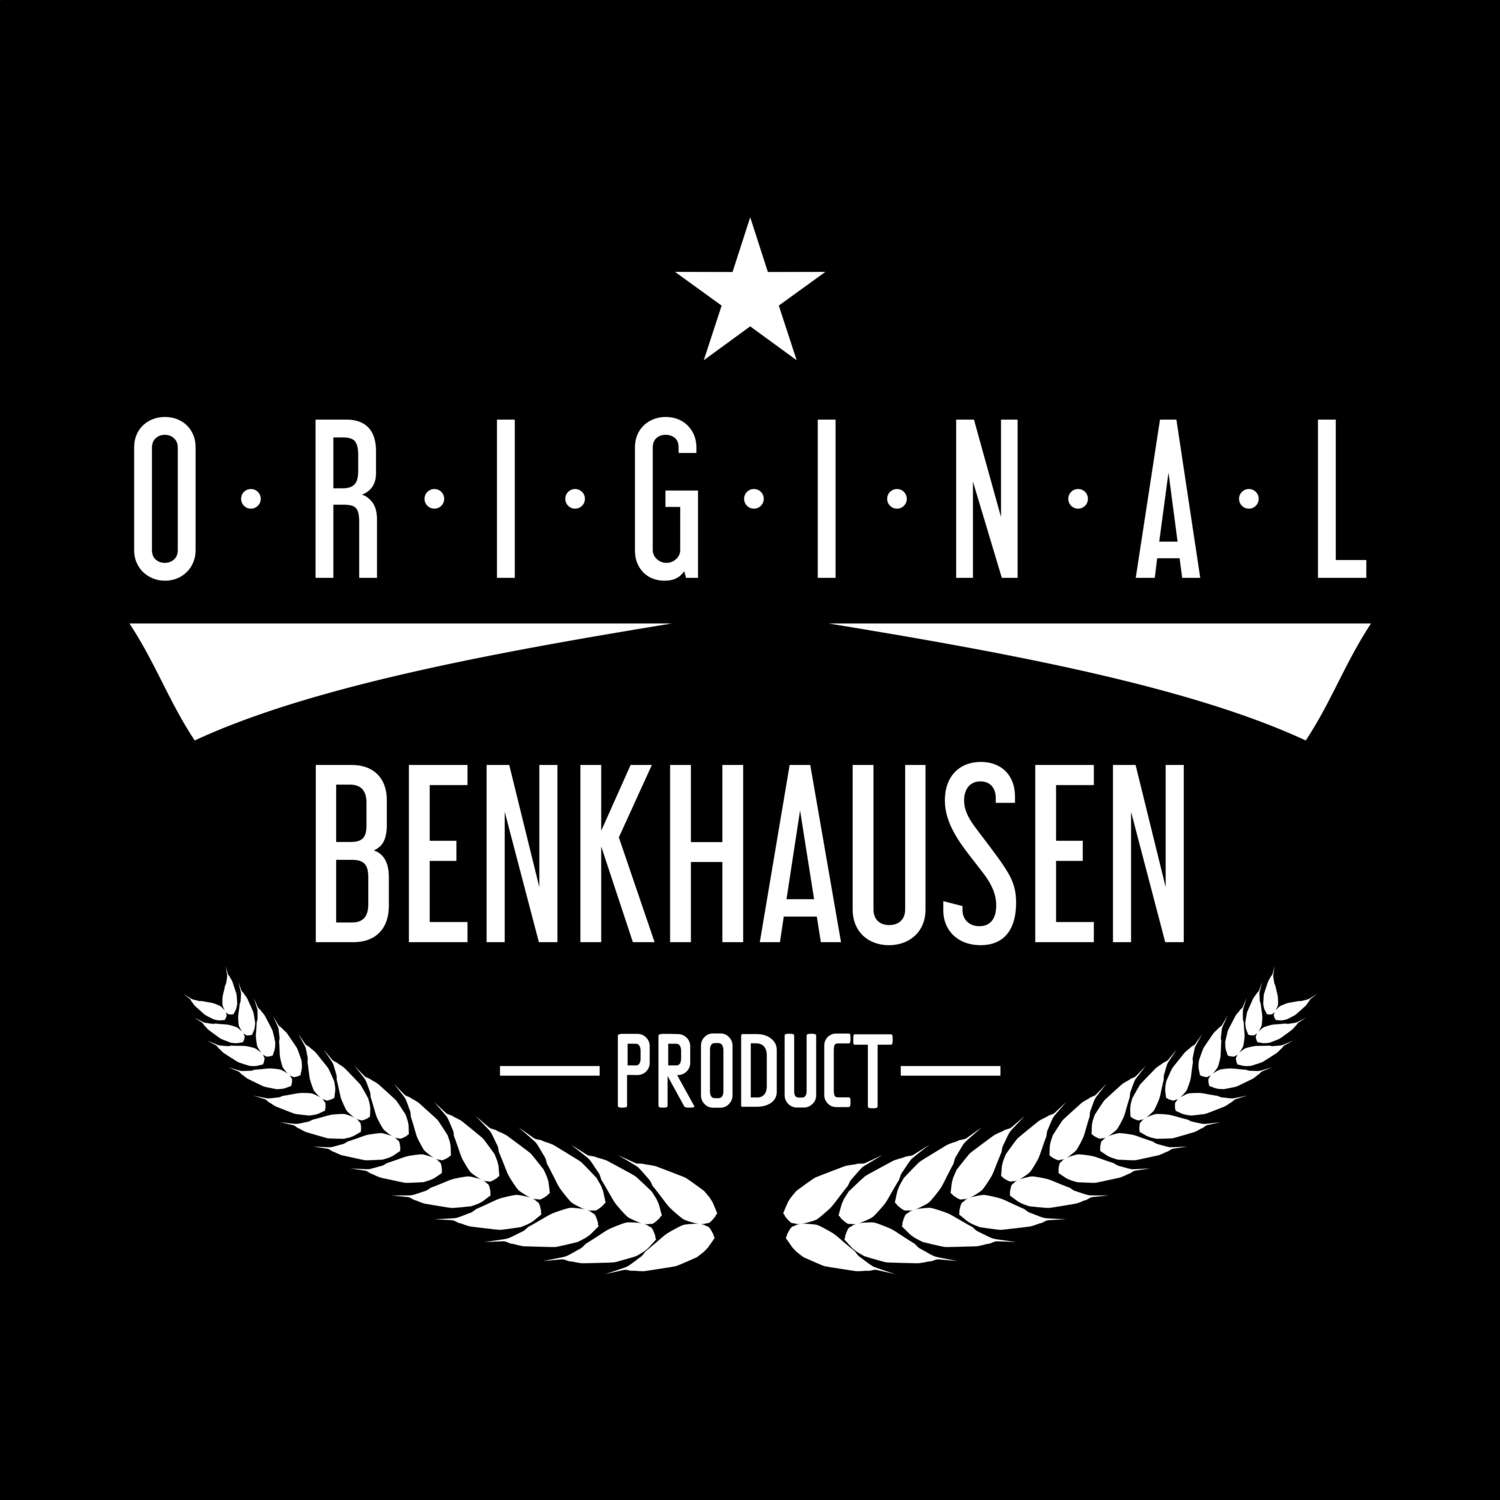 Benkhausen T-Shirt »Original Product«